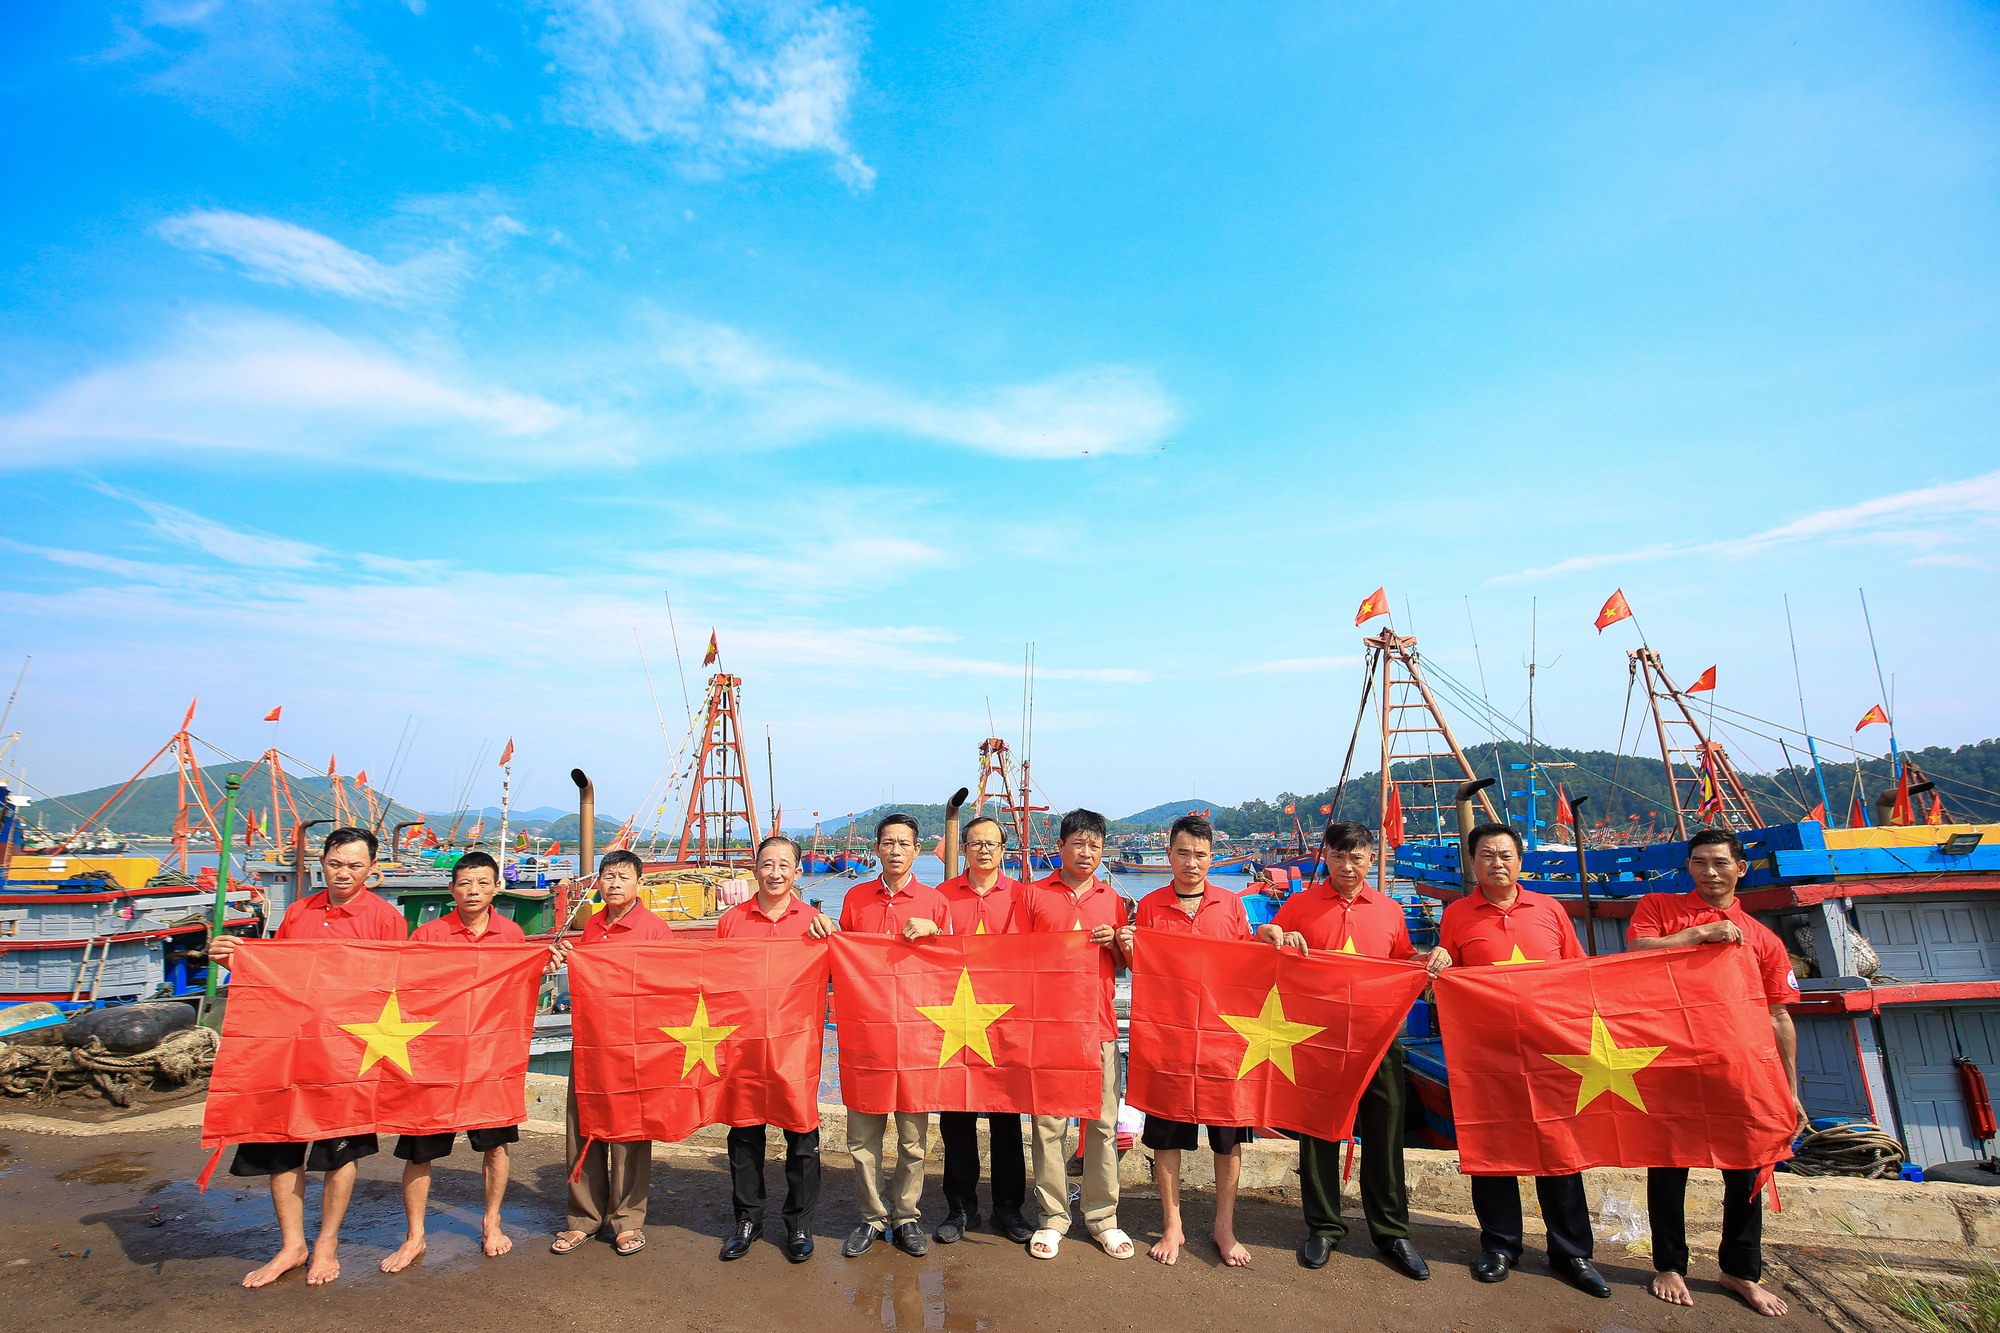 Trao 10.000 lá cờ Tổ quốc cho ngư dân nhân Tuần lễ Biển và Hải đảo - Ảnh 4.